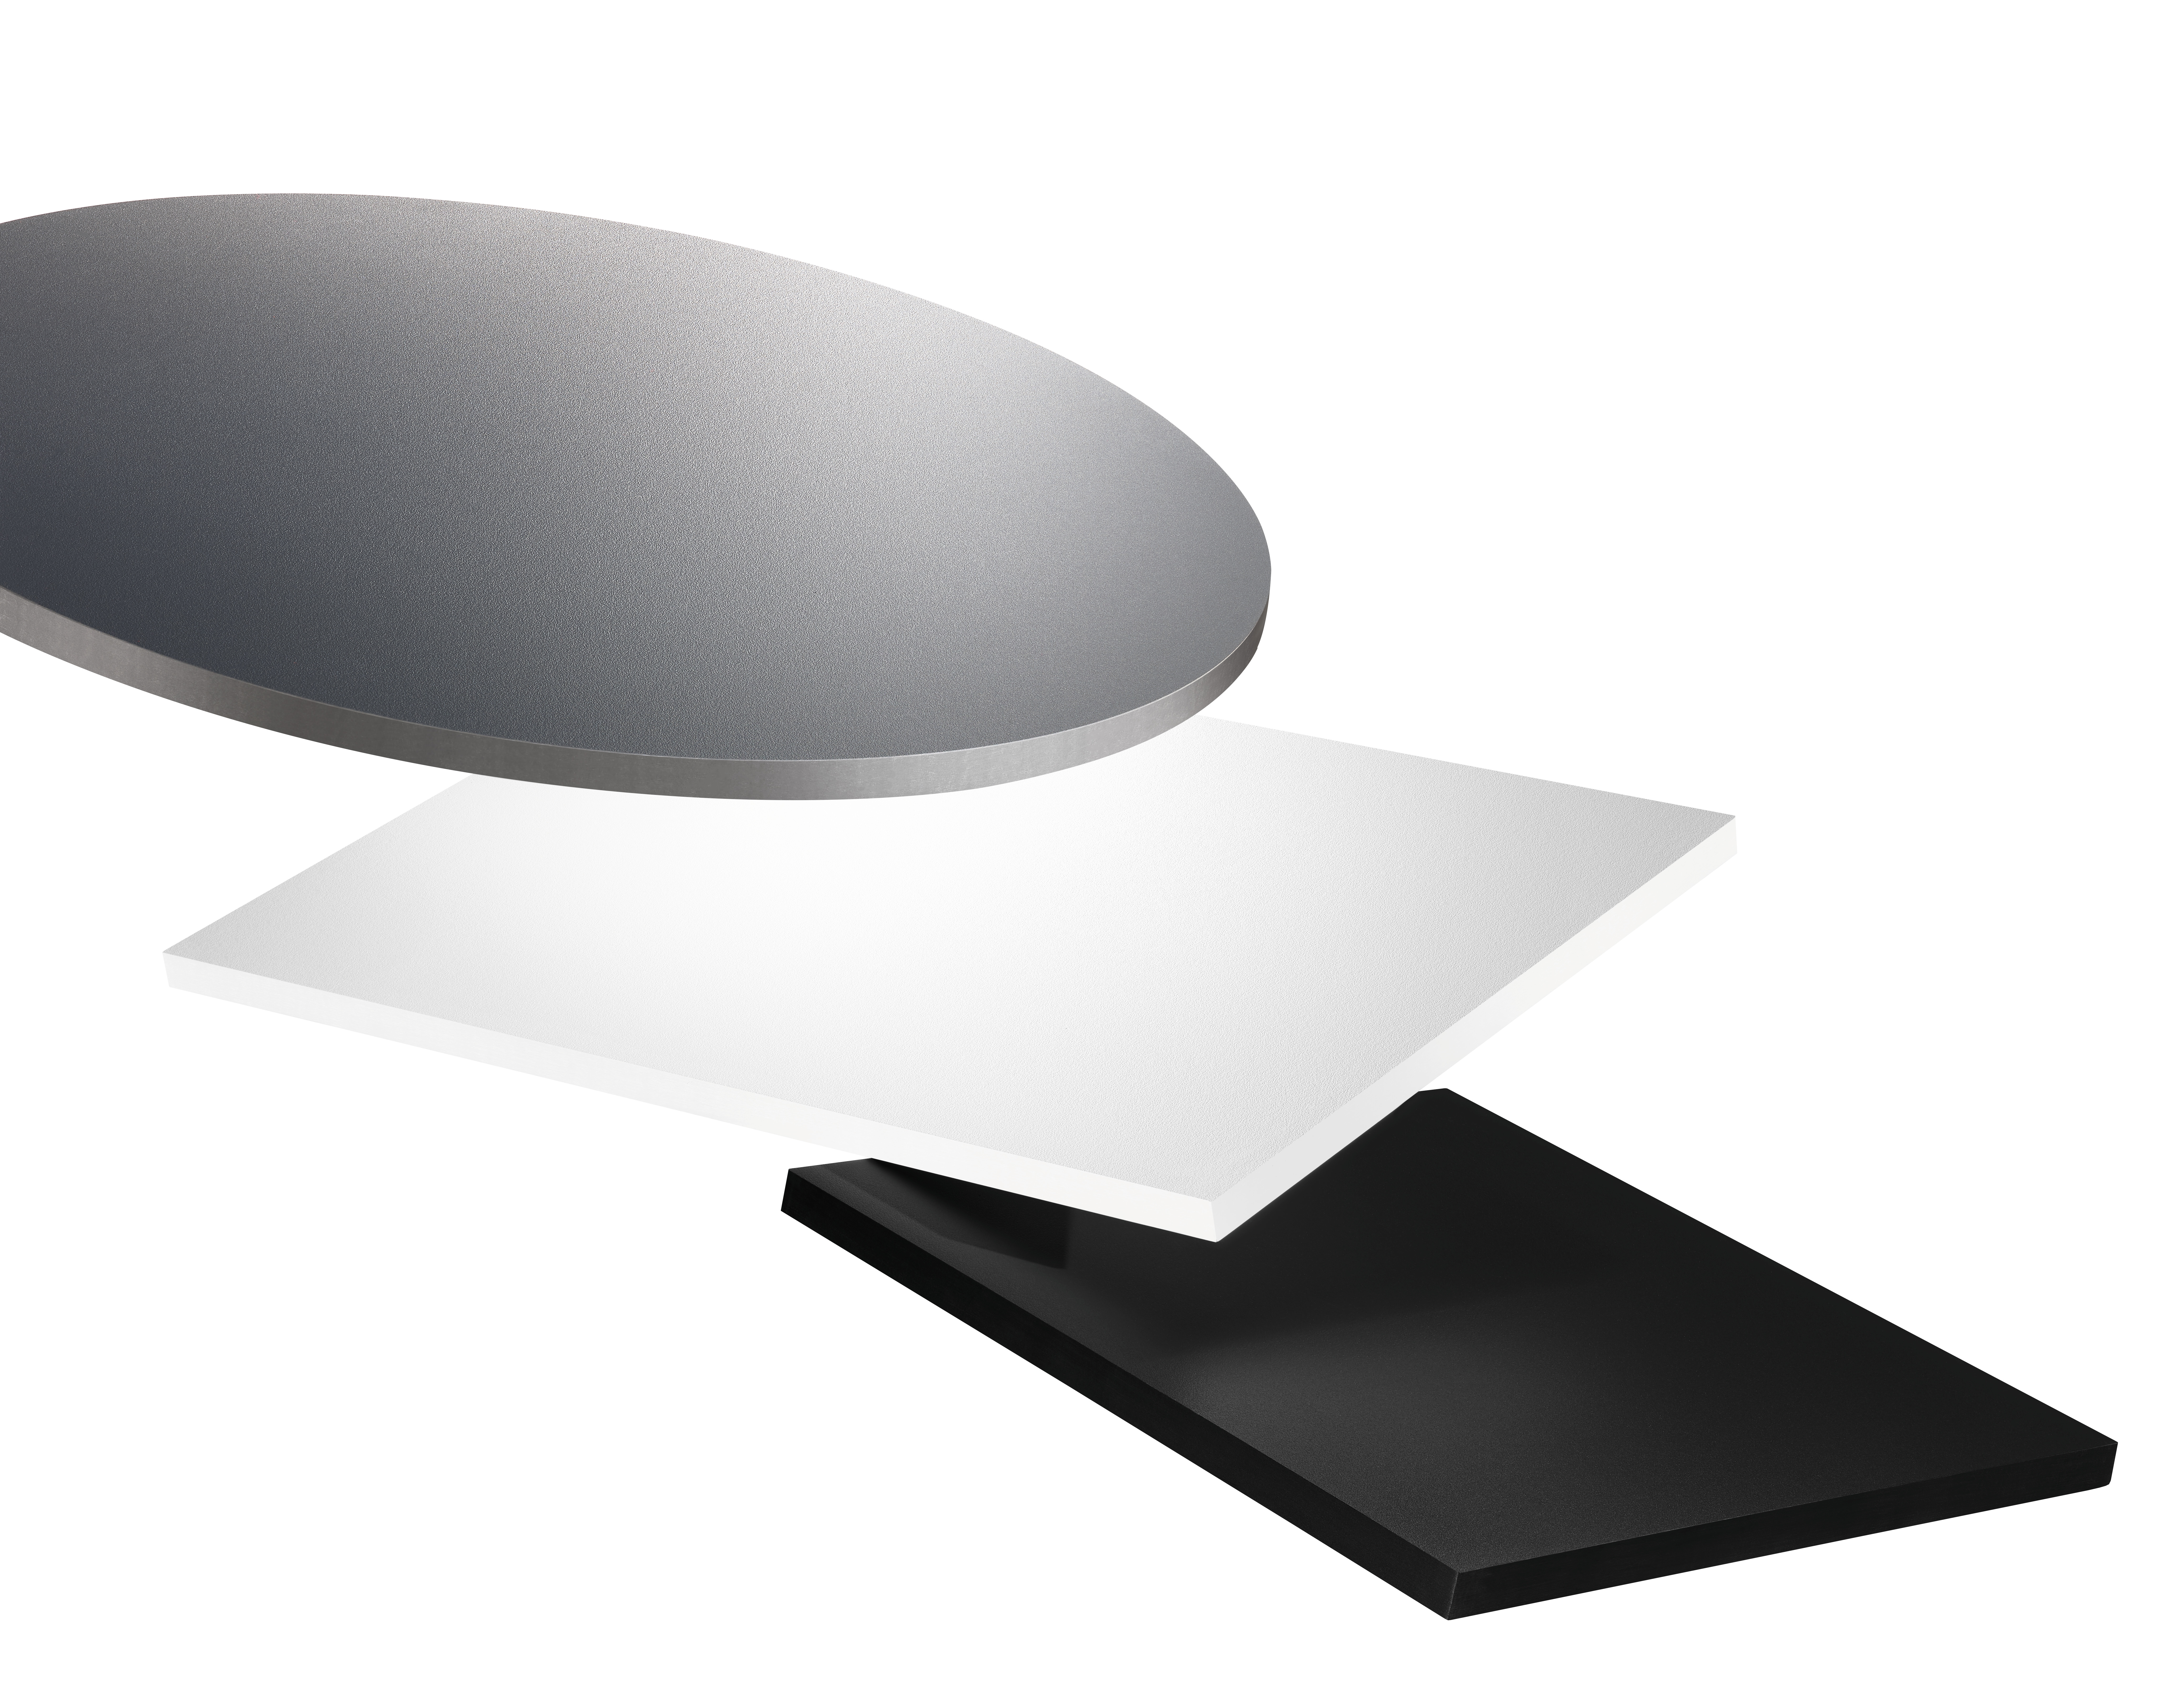 Kompaktni laminat - pouzdano rješenje za površine izložene intenzivnom korištenju.